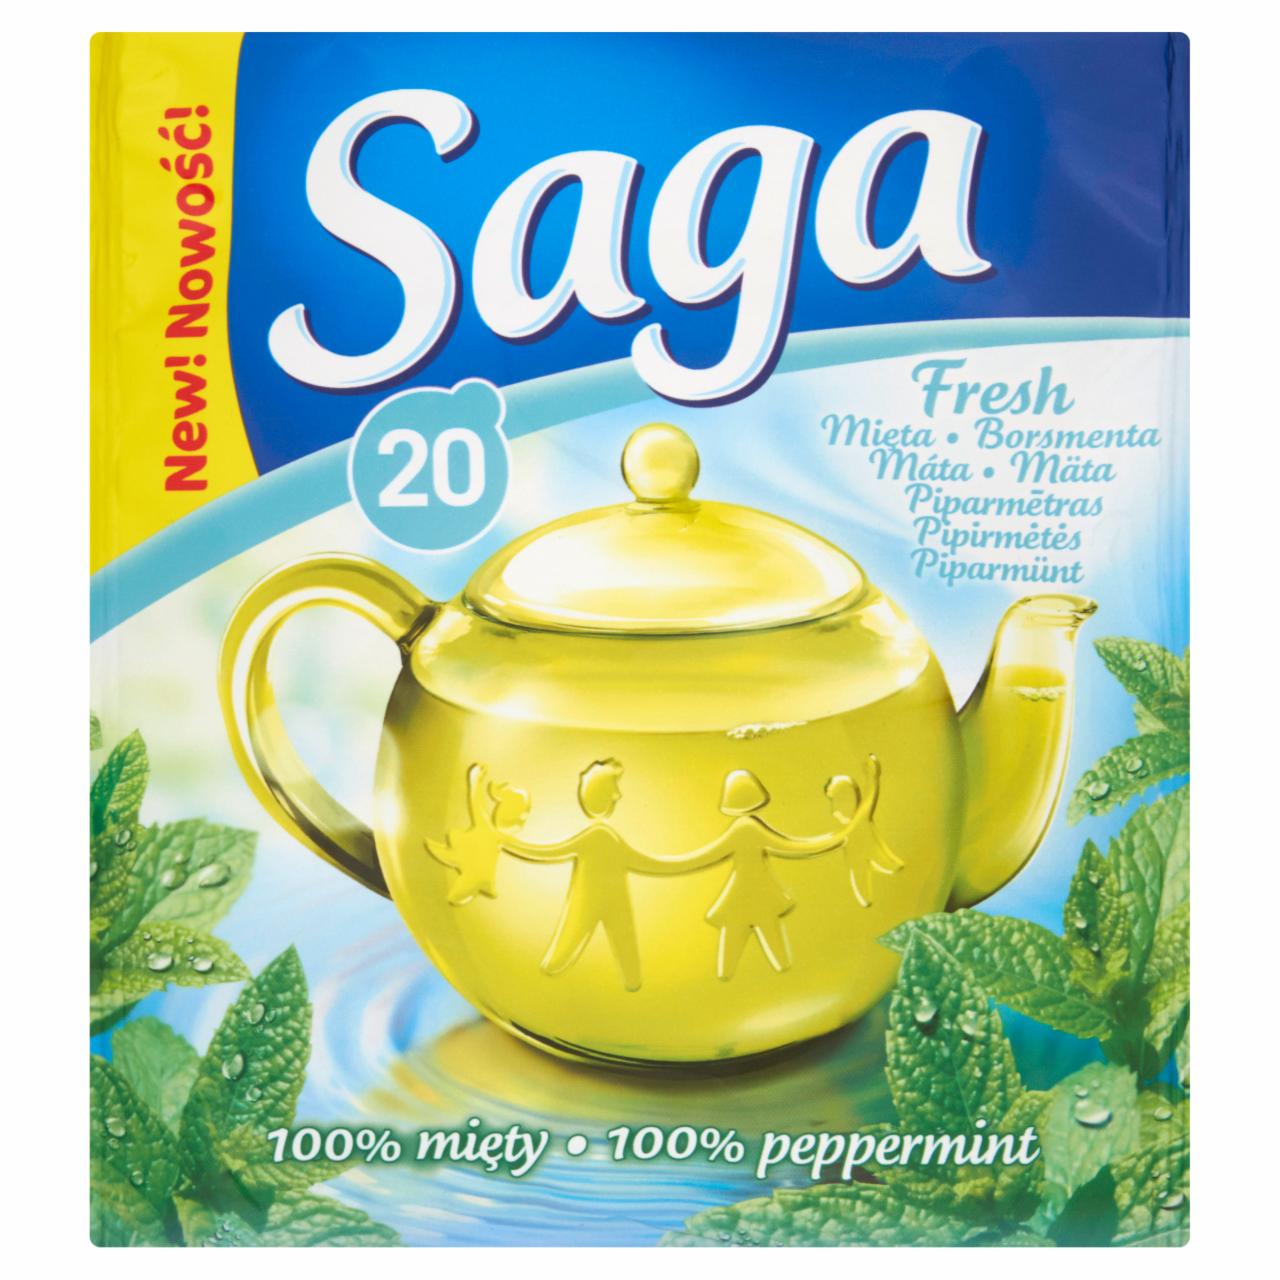 Zdjęcia - Saga Fresh mięta Herbatka ziołowa 26 g (20 torebek)